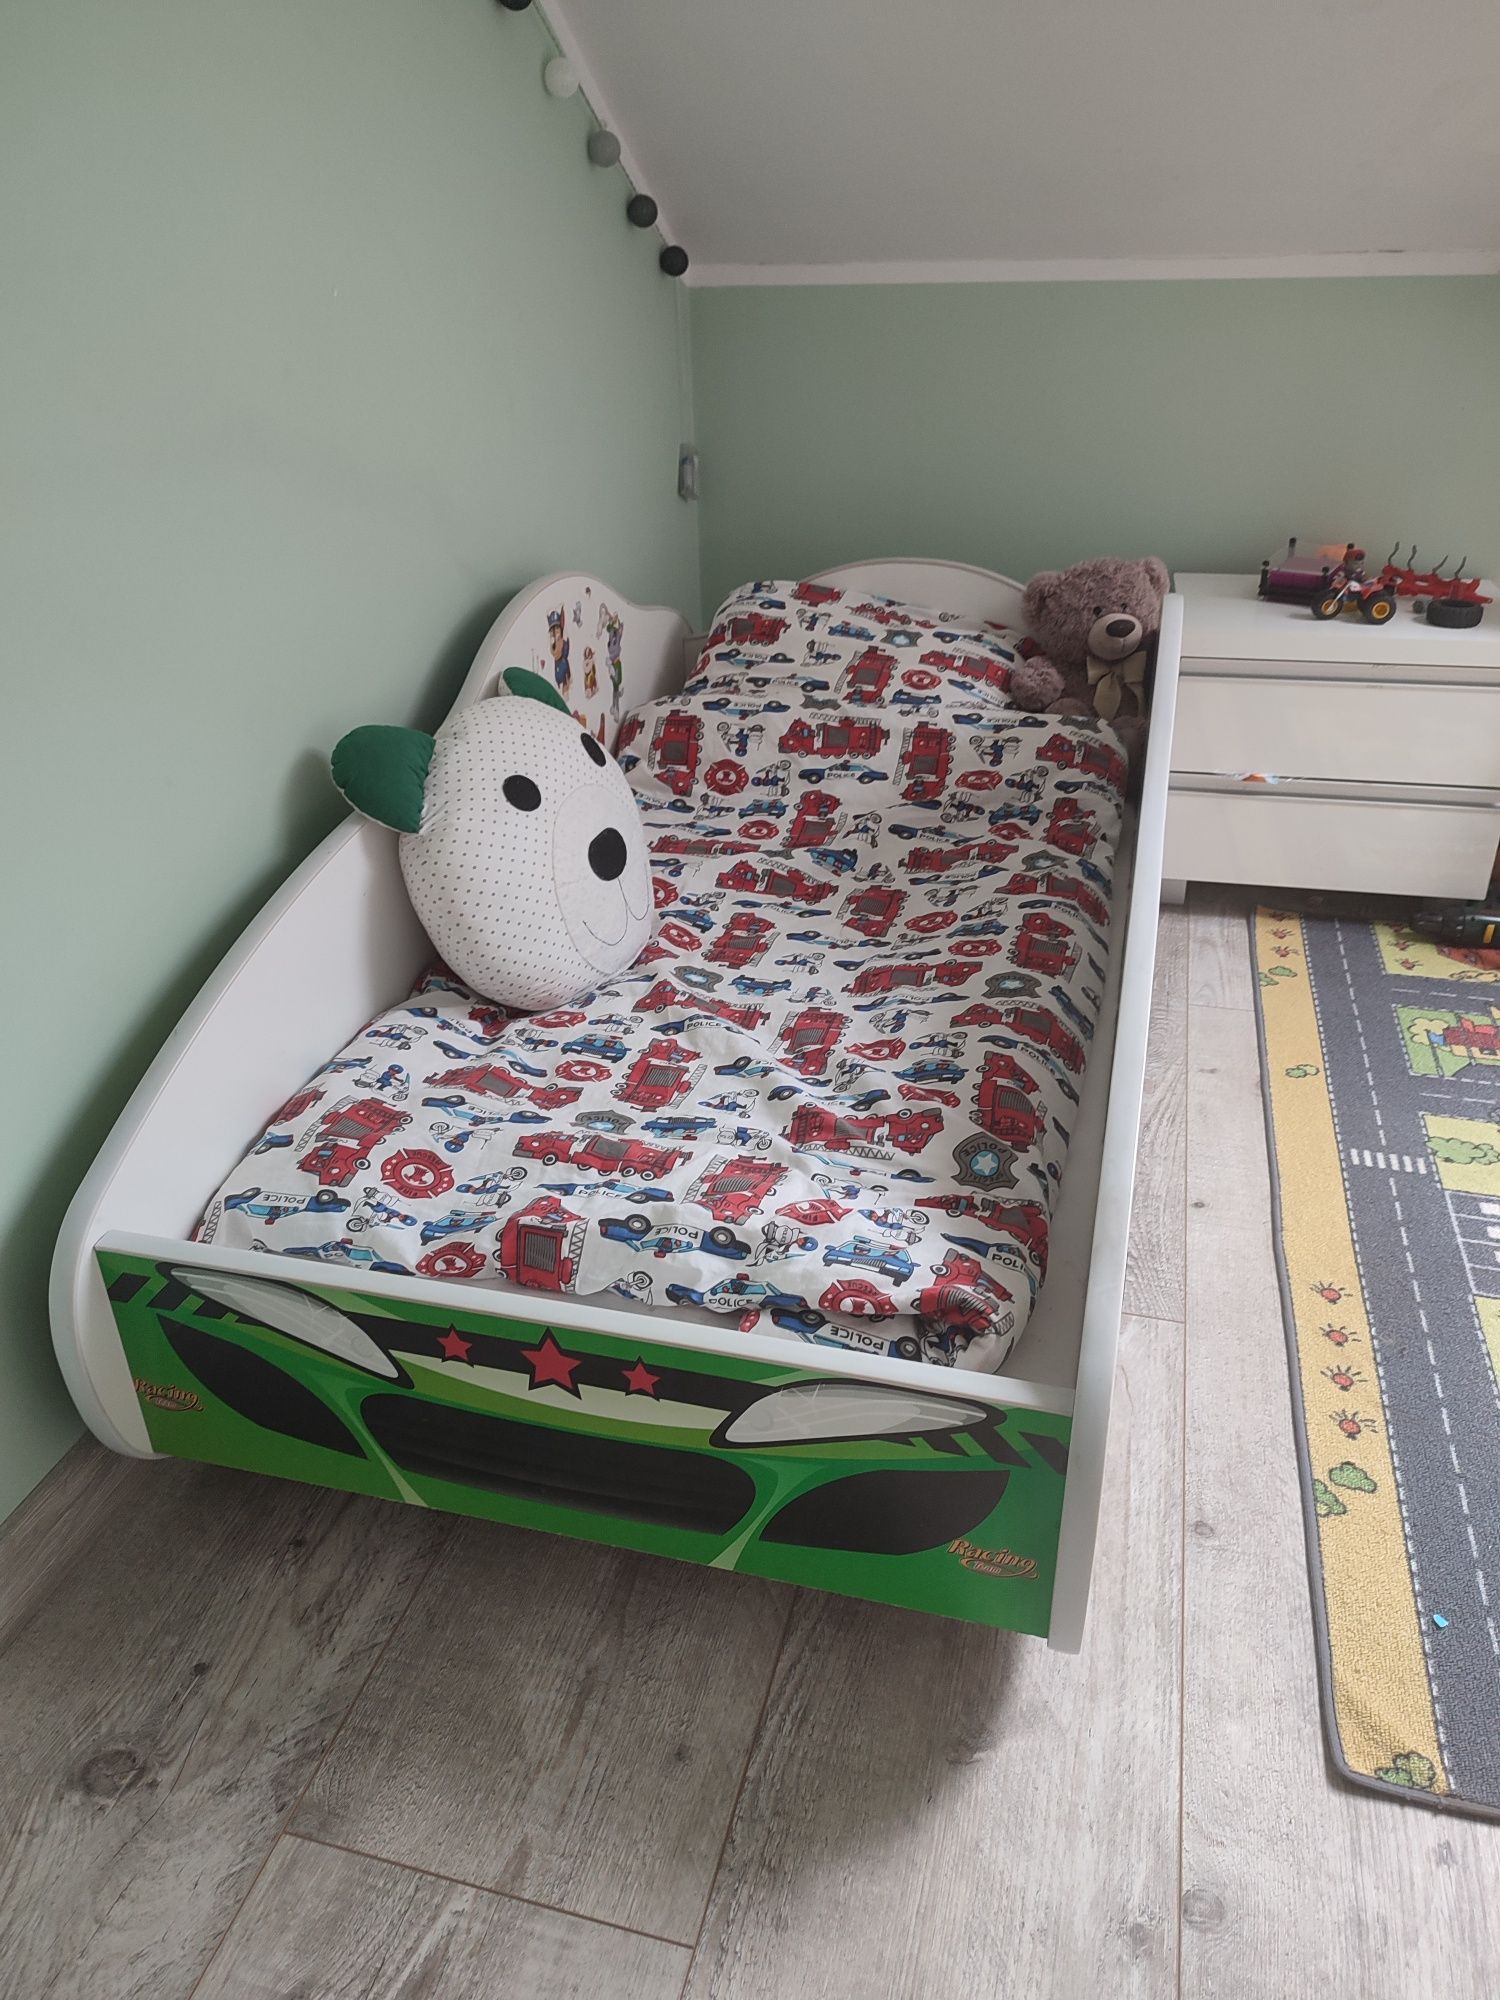 Łóżko dla dziecka auto materac pościel komplet